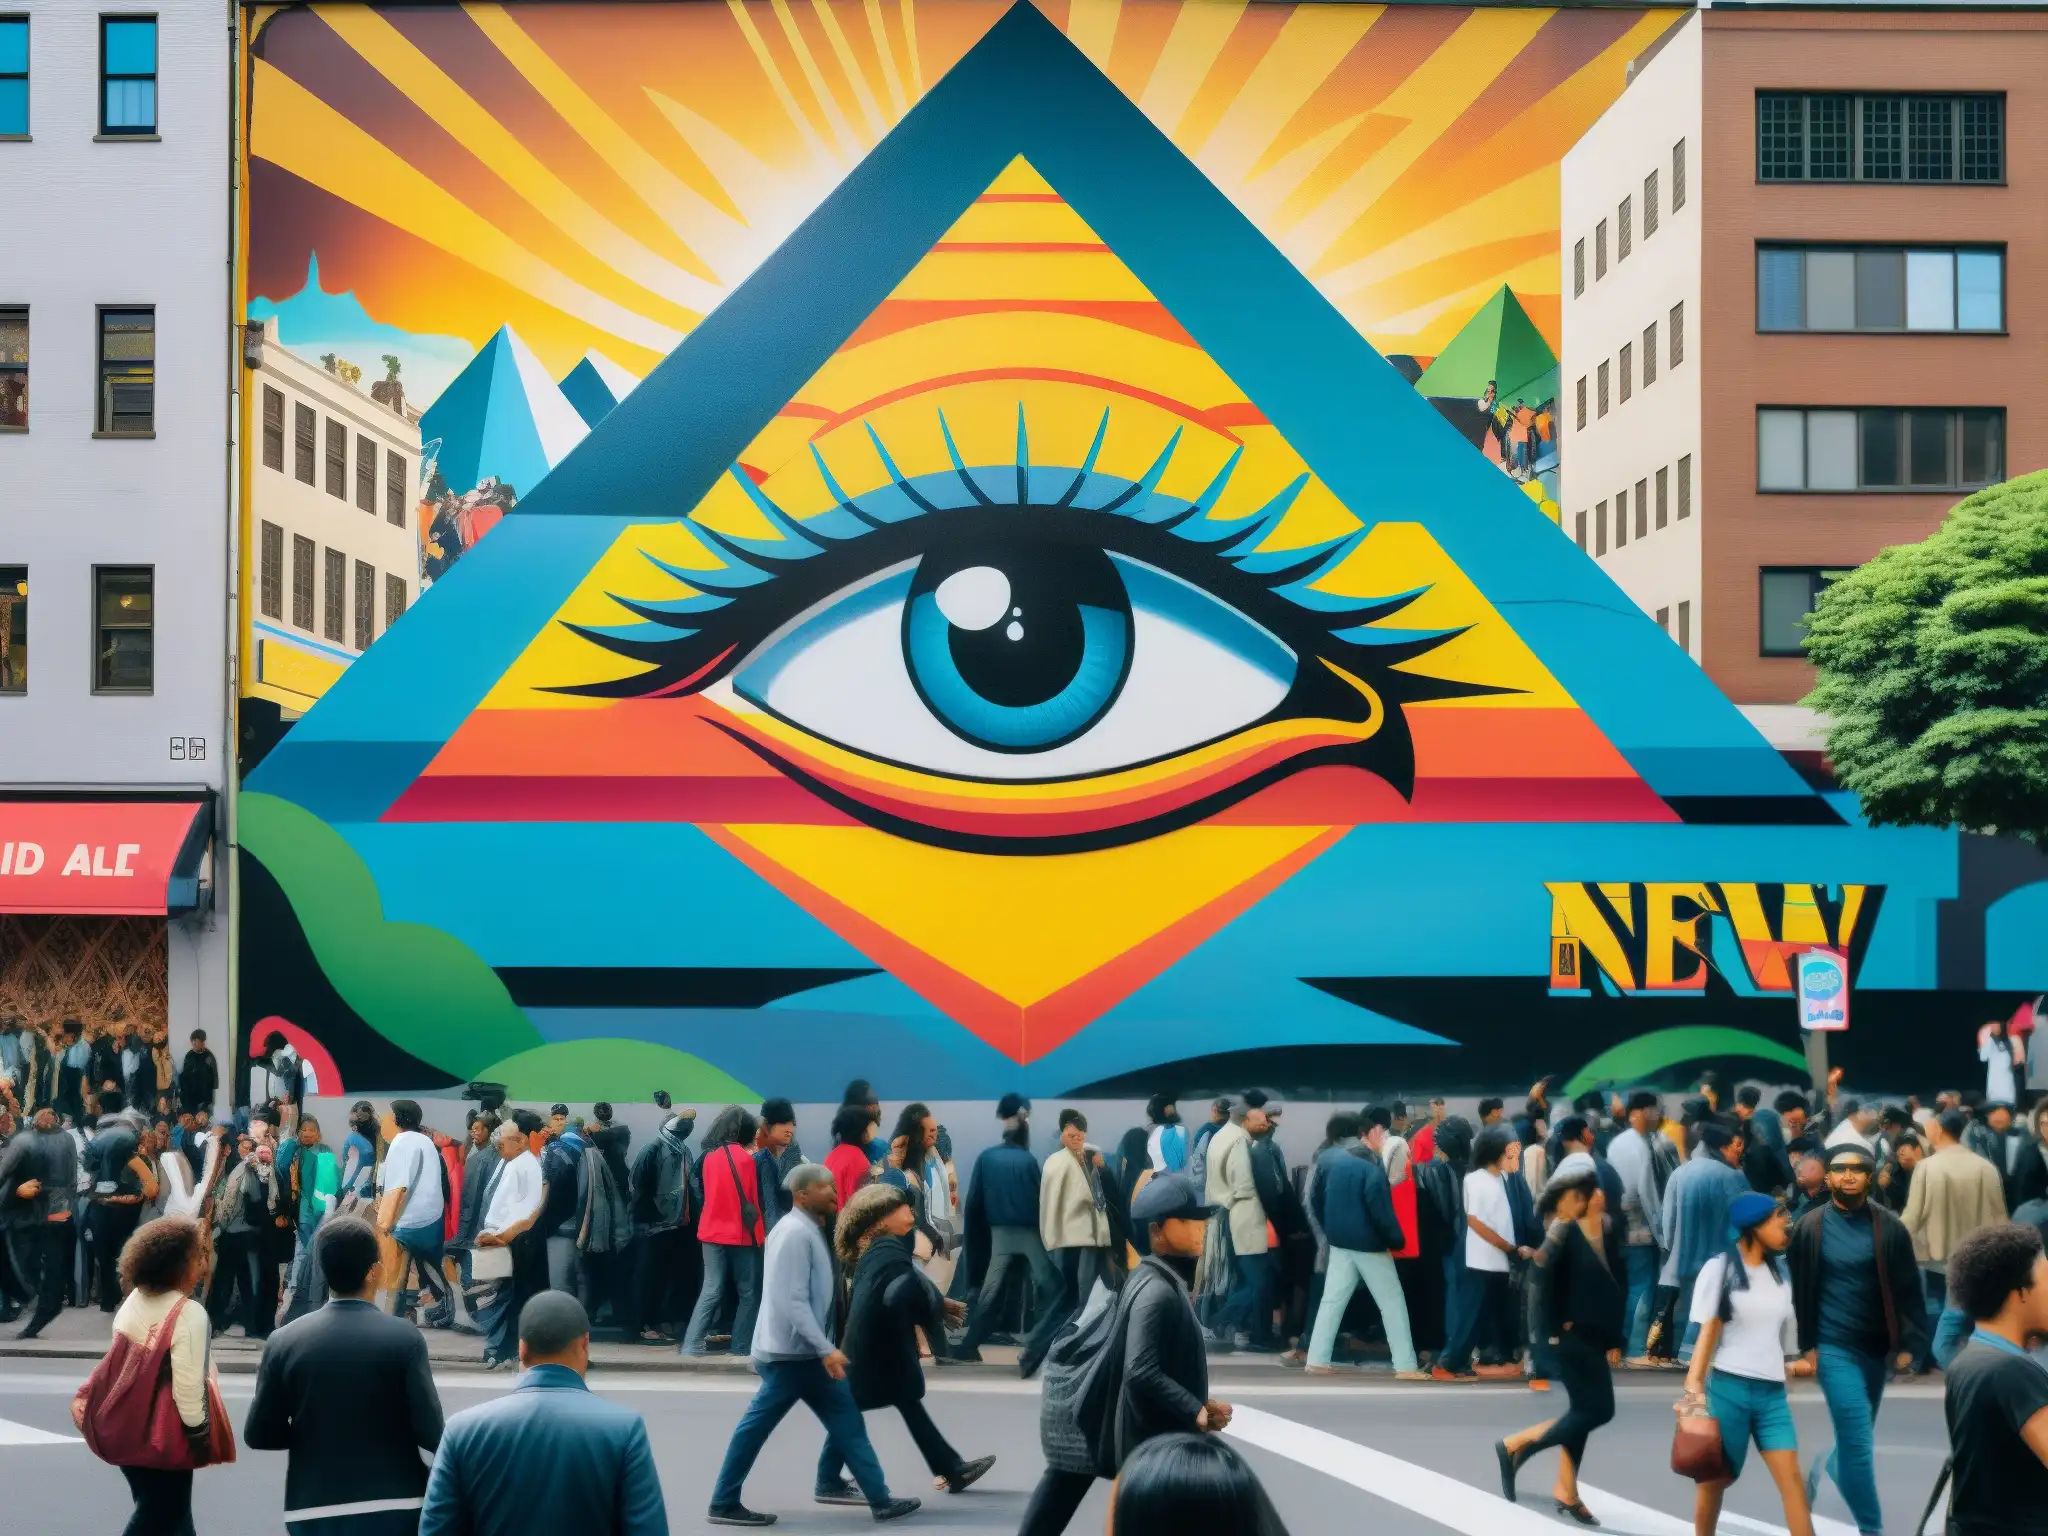 Una calle de la ciudad bulliciosa con un mural del 'Nuevo Orden Mundial análisis' y personas en su vida diaria, reflexionando sobre su influencia